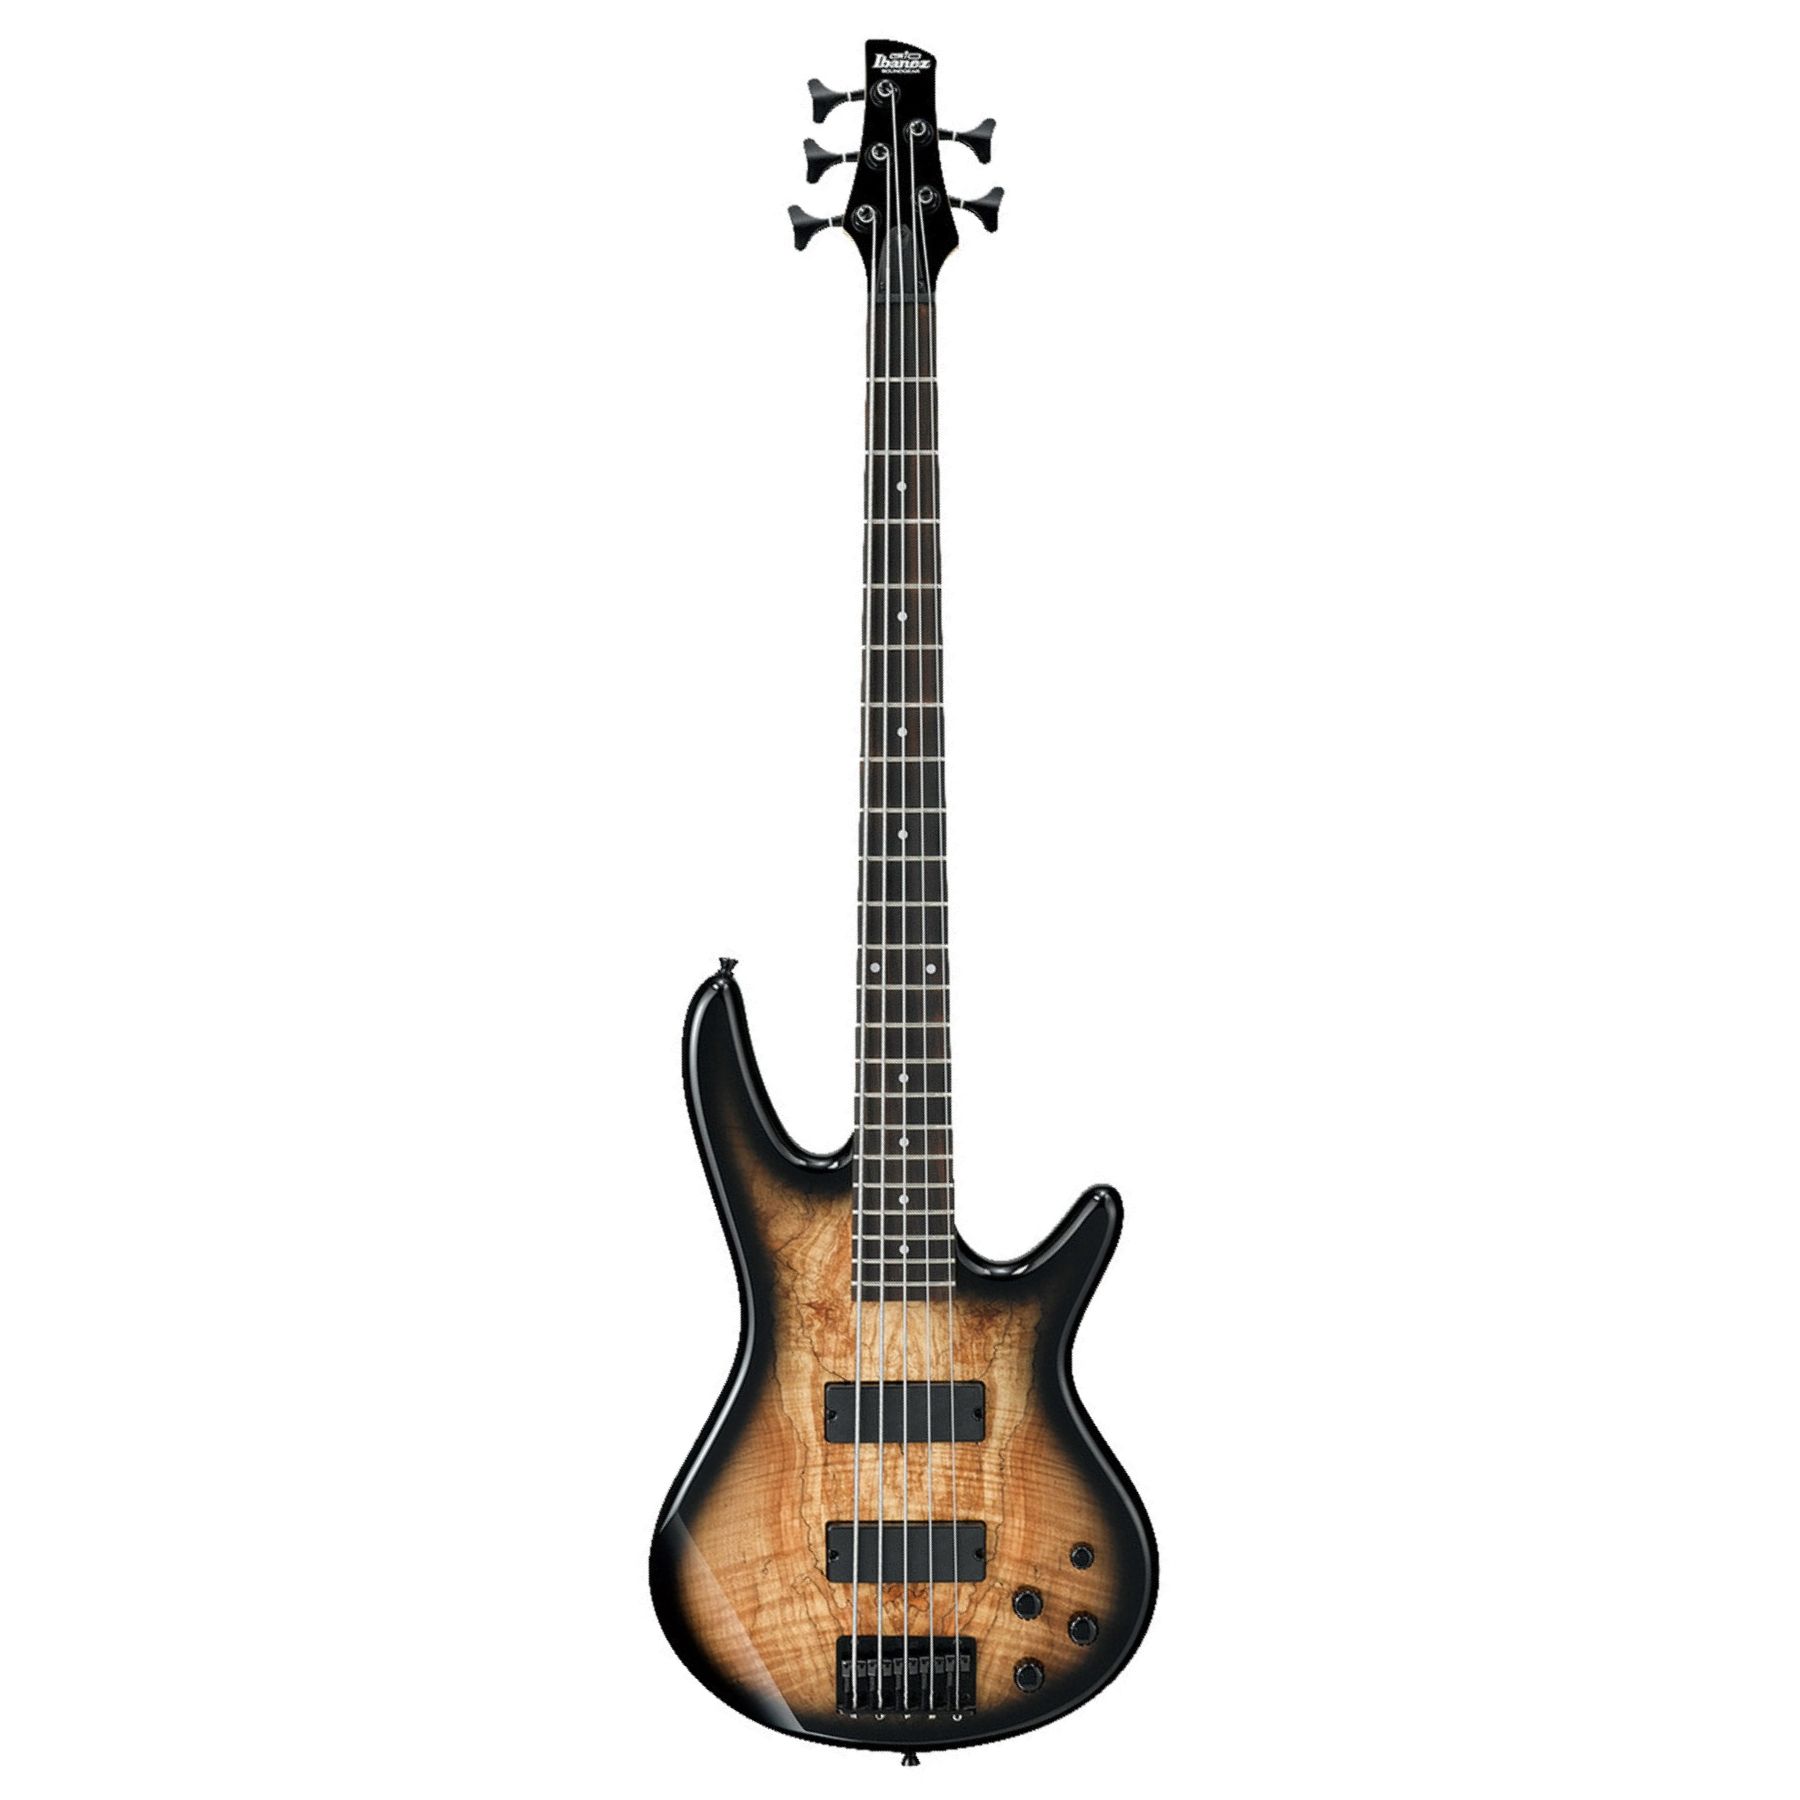 Buy Ibanez GSR205SM Bass Guitar online in India